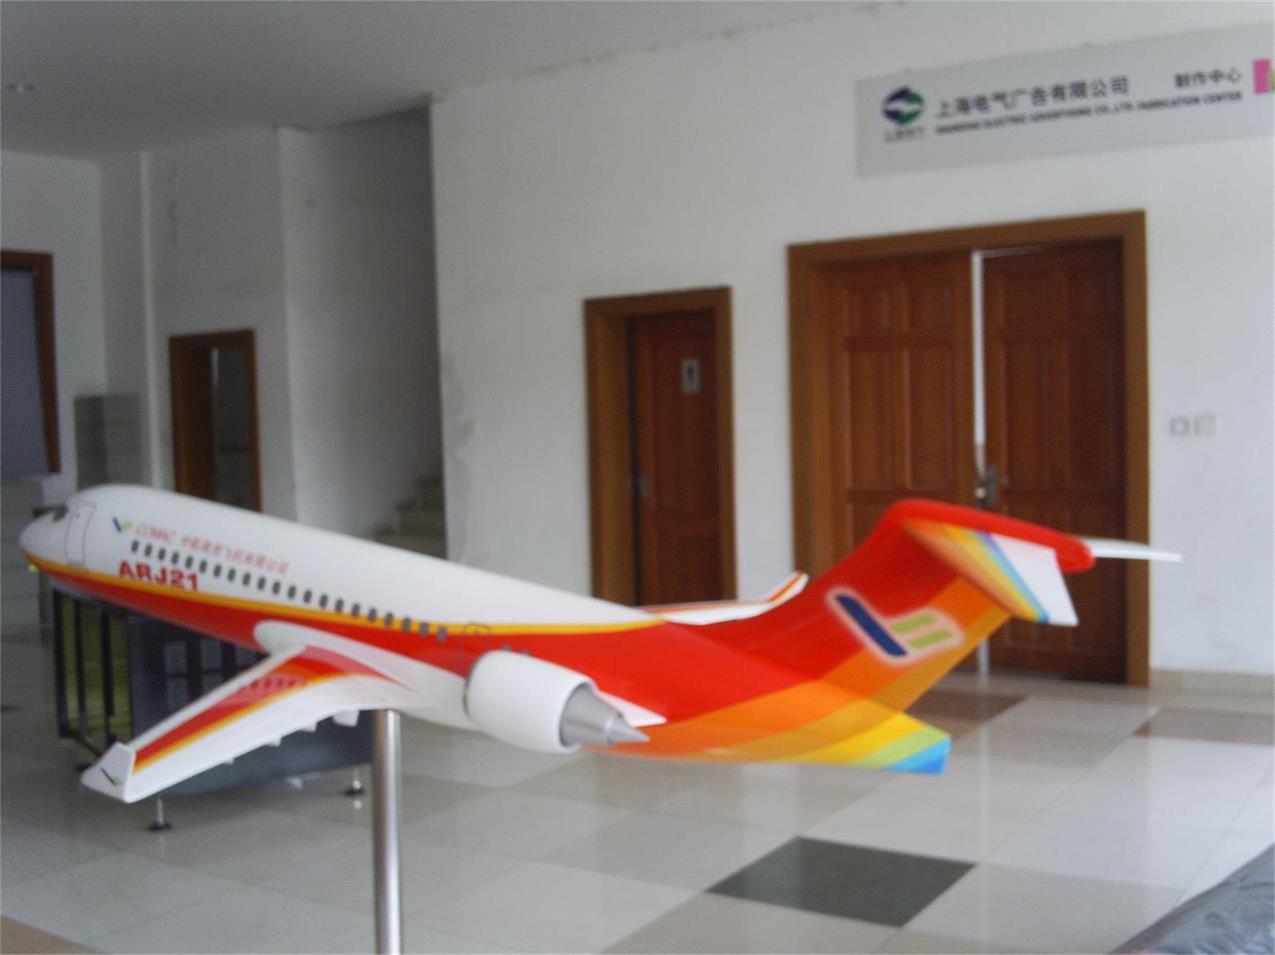 义乌市航天航空模型